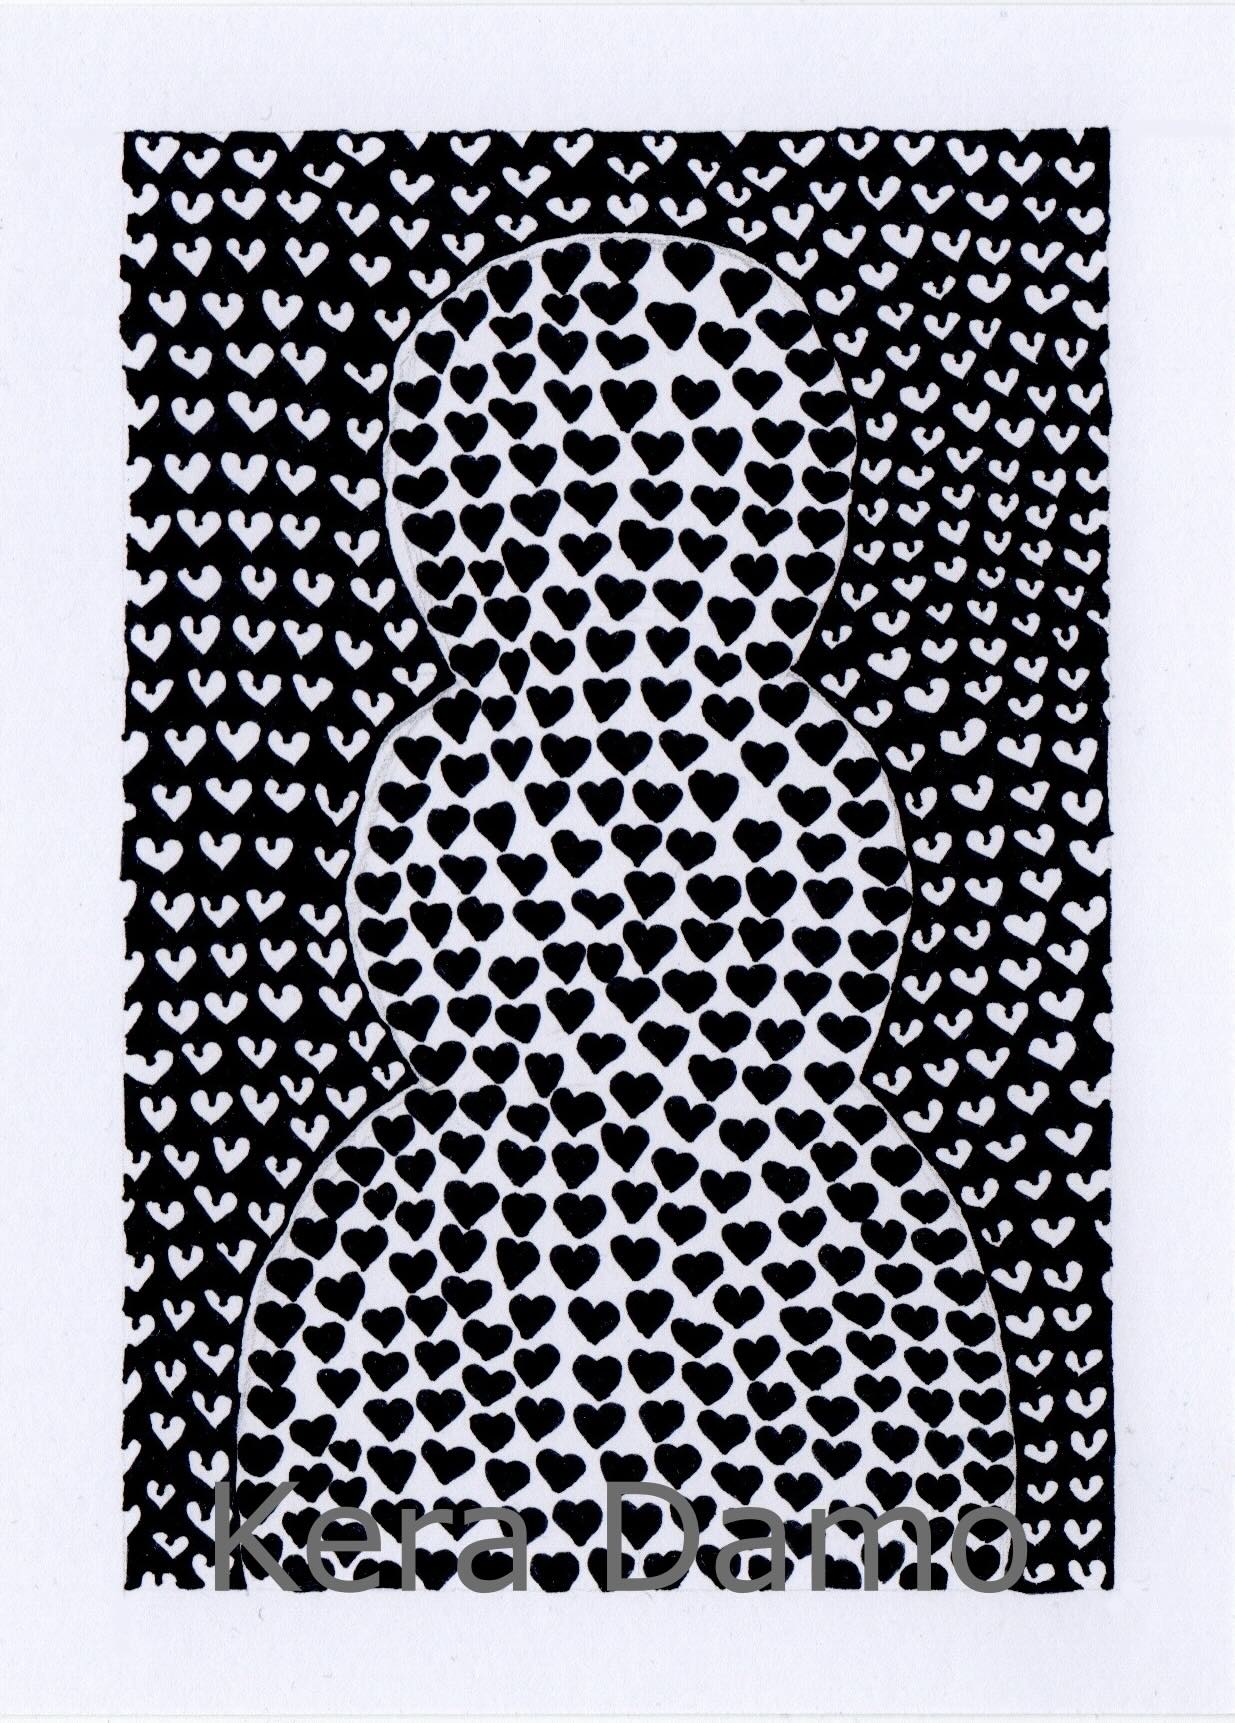 A black and white pen drawing made by visual artist Kera Damo from the Hague / Een zwart wit pentekening van beeldend kunstenaar Kera Damo uit Den Haag